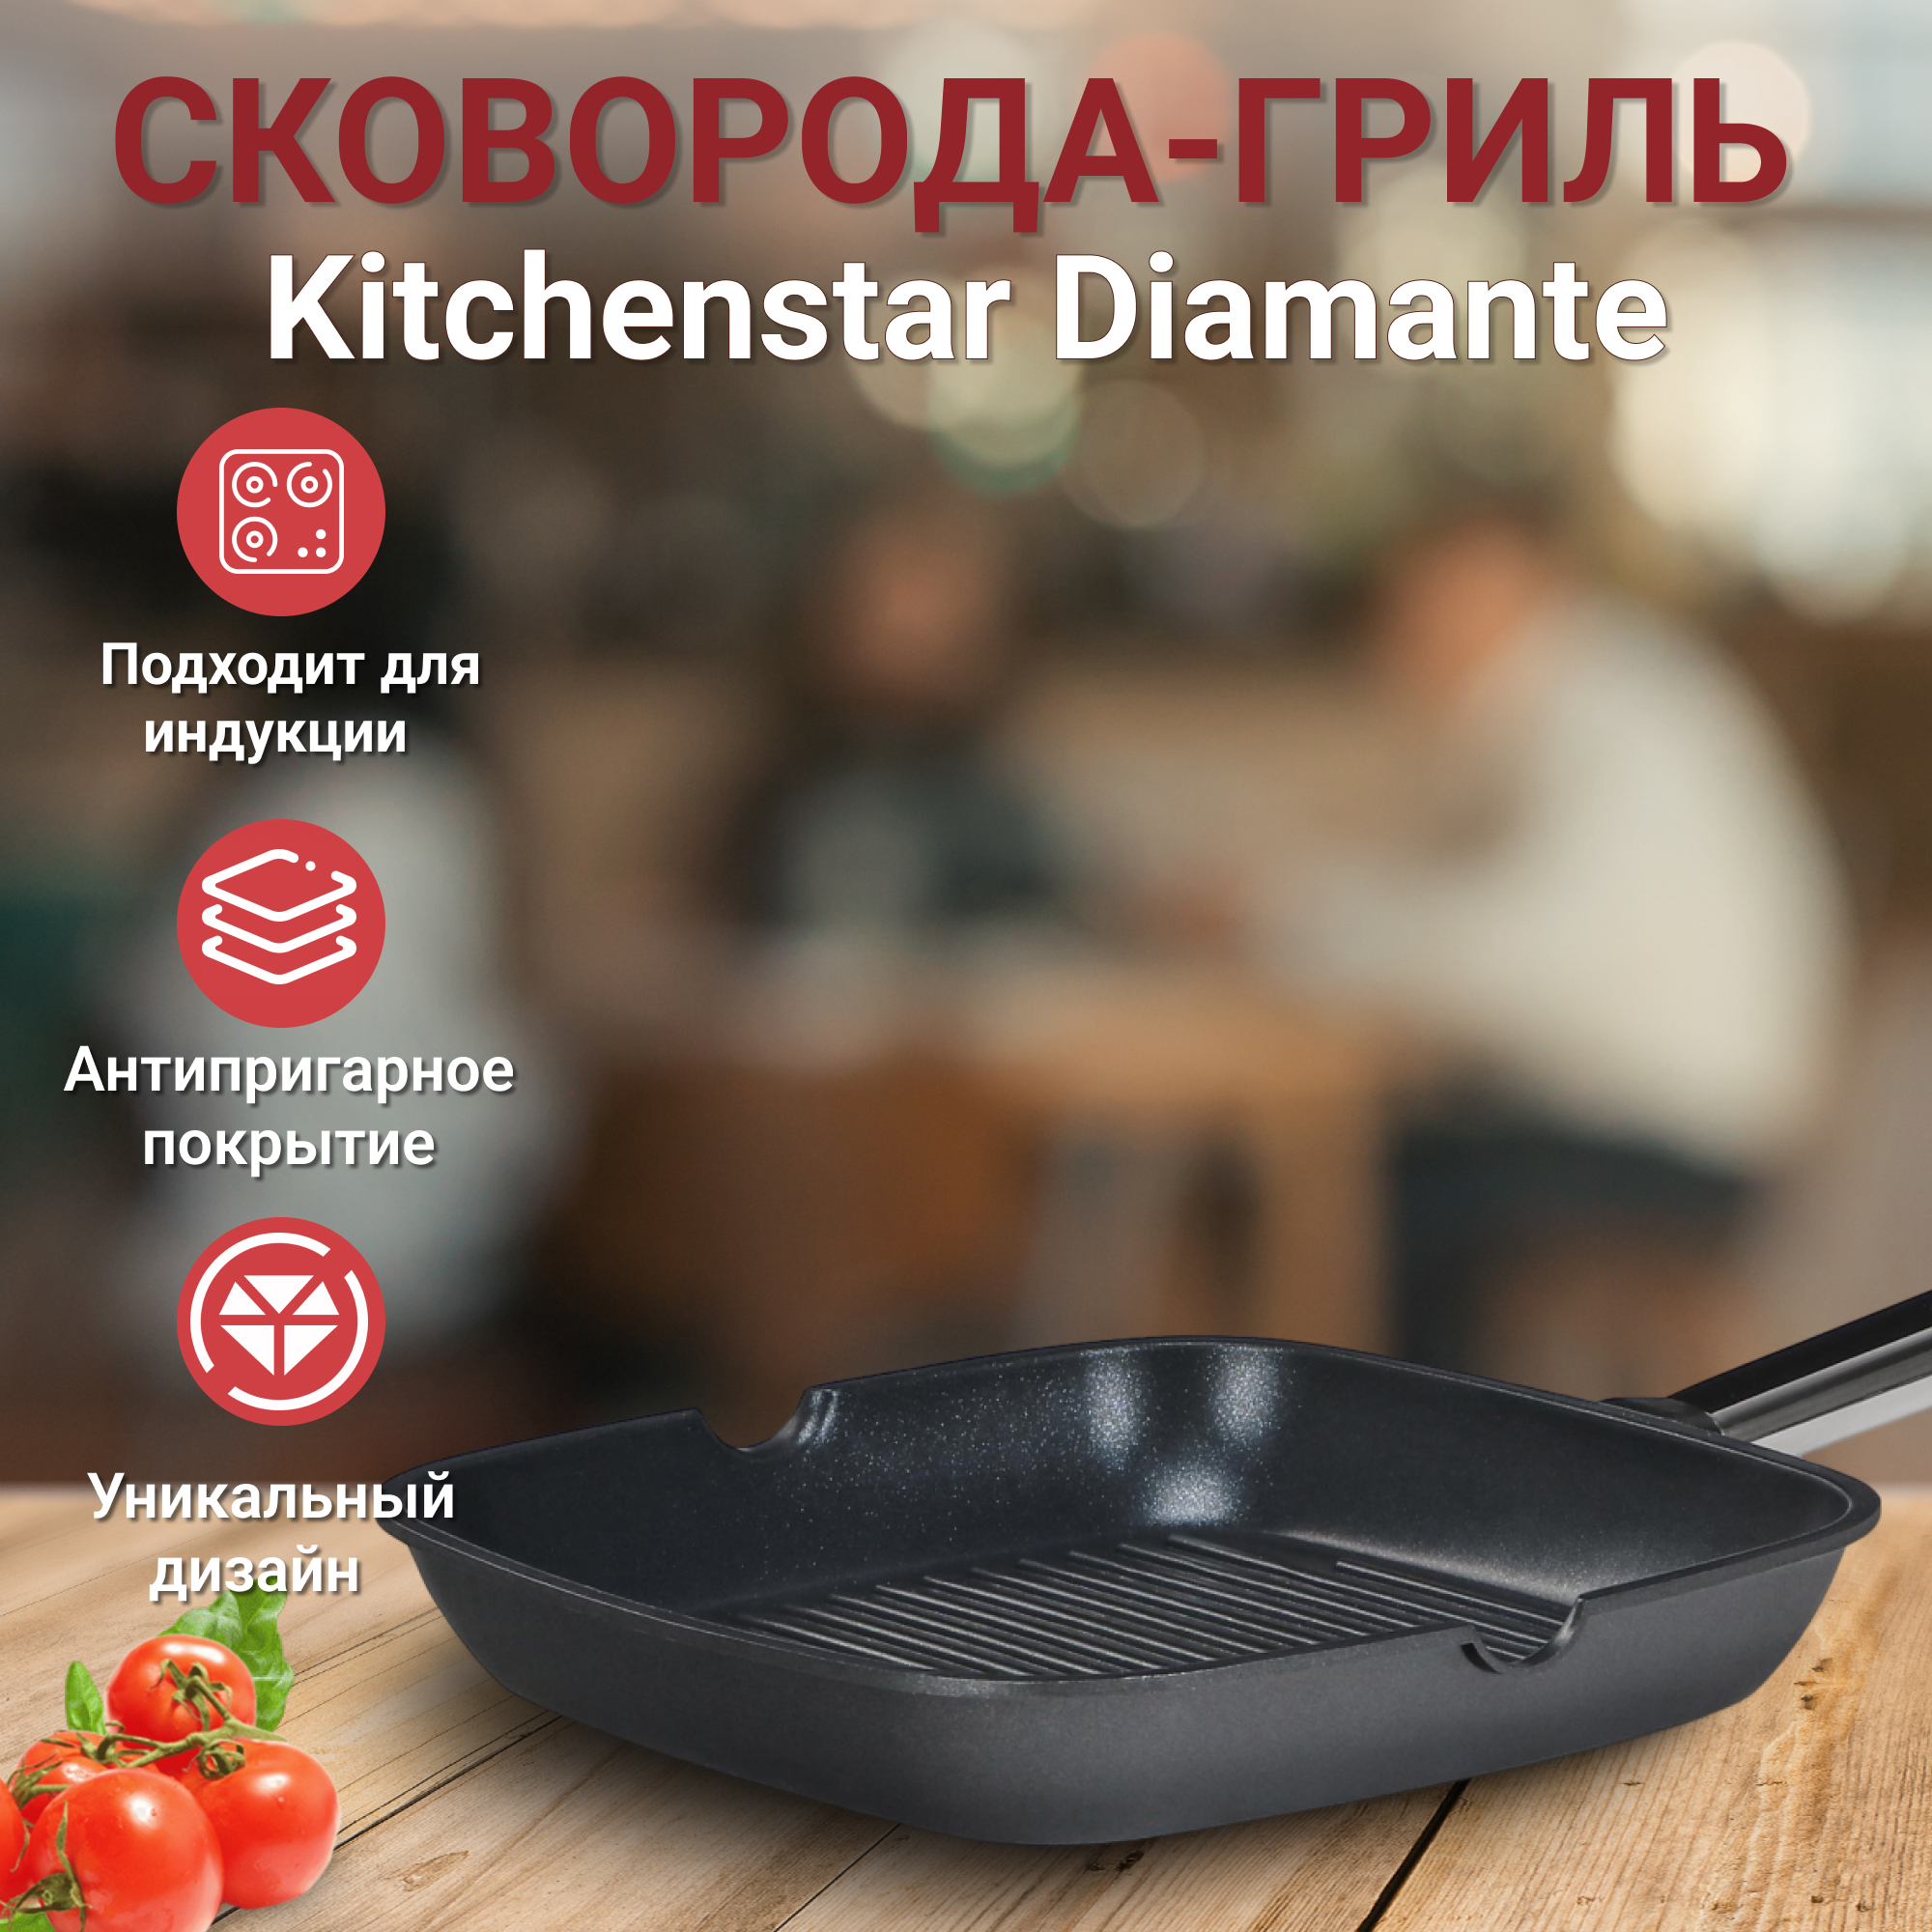 Сковорода-гриль Kitchen star Diamante 24 см, цвет черный - фото 2